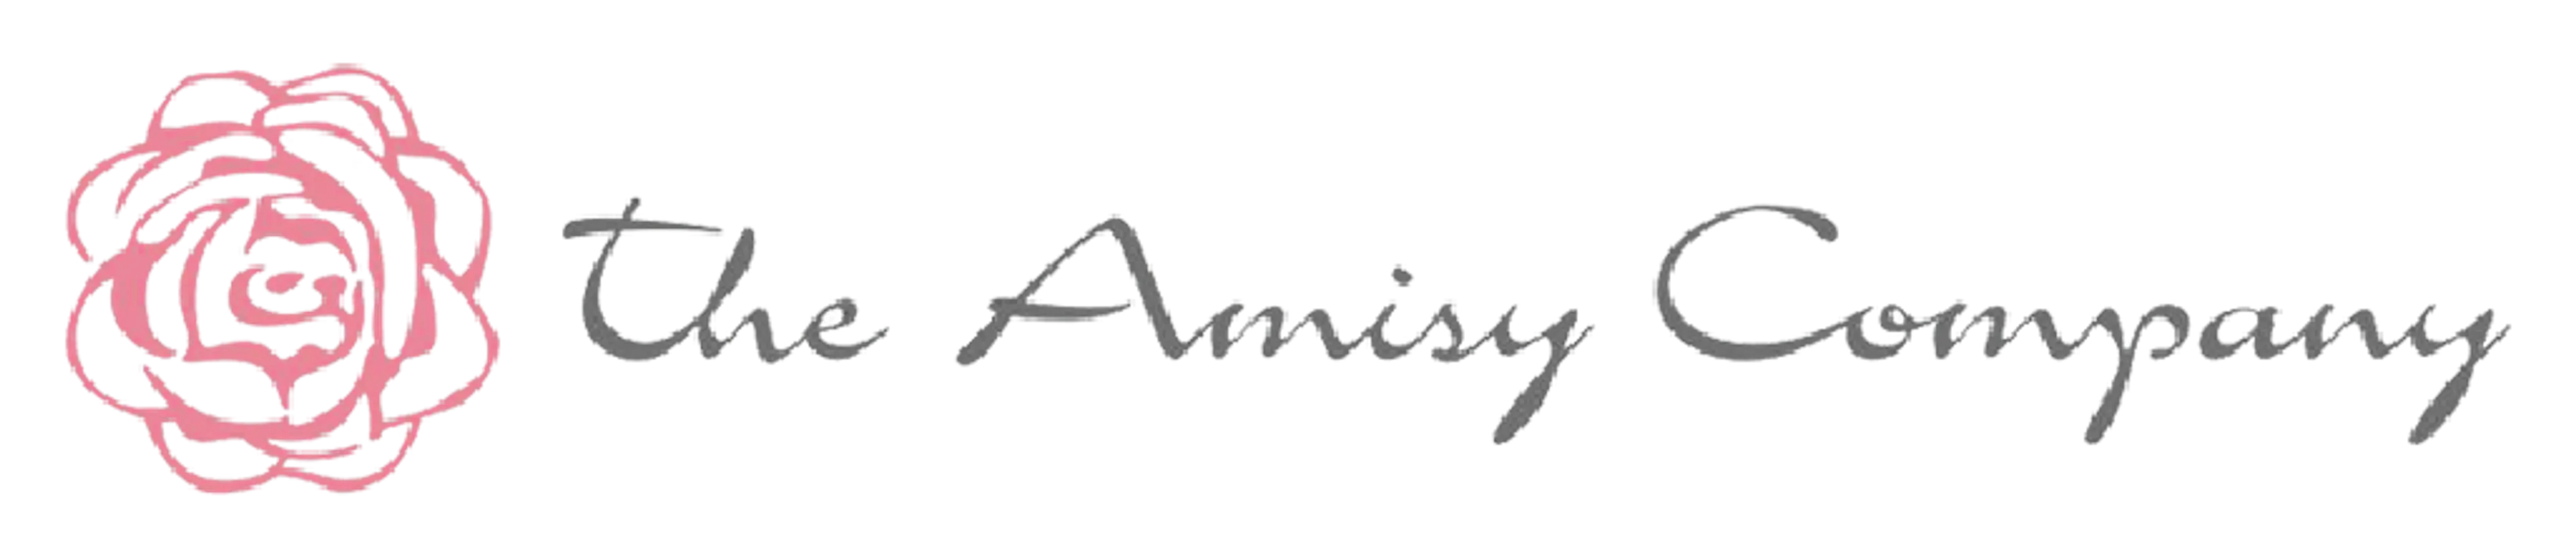 THE AMISY COMPANY logo